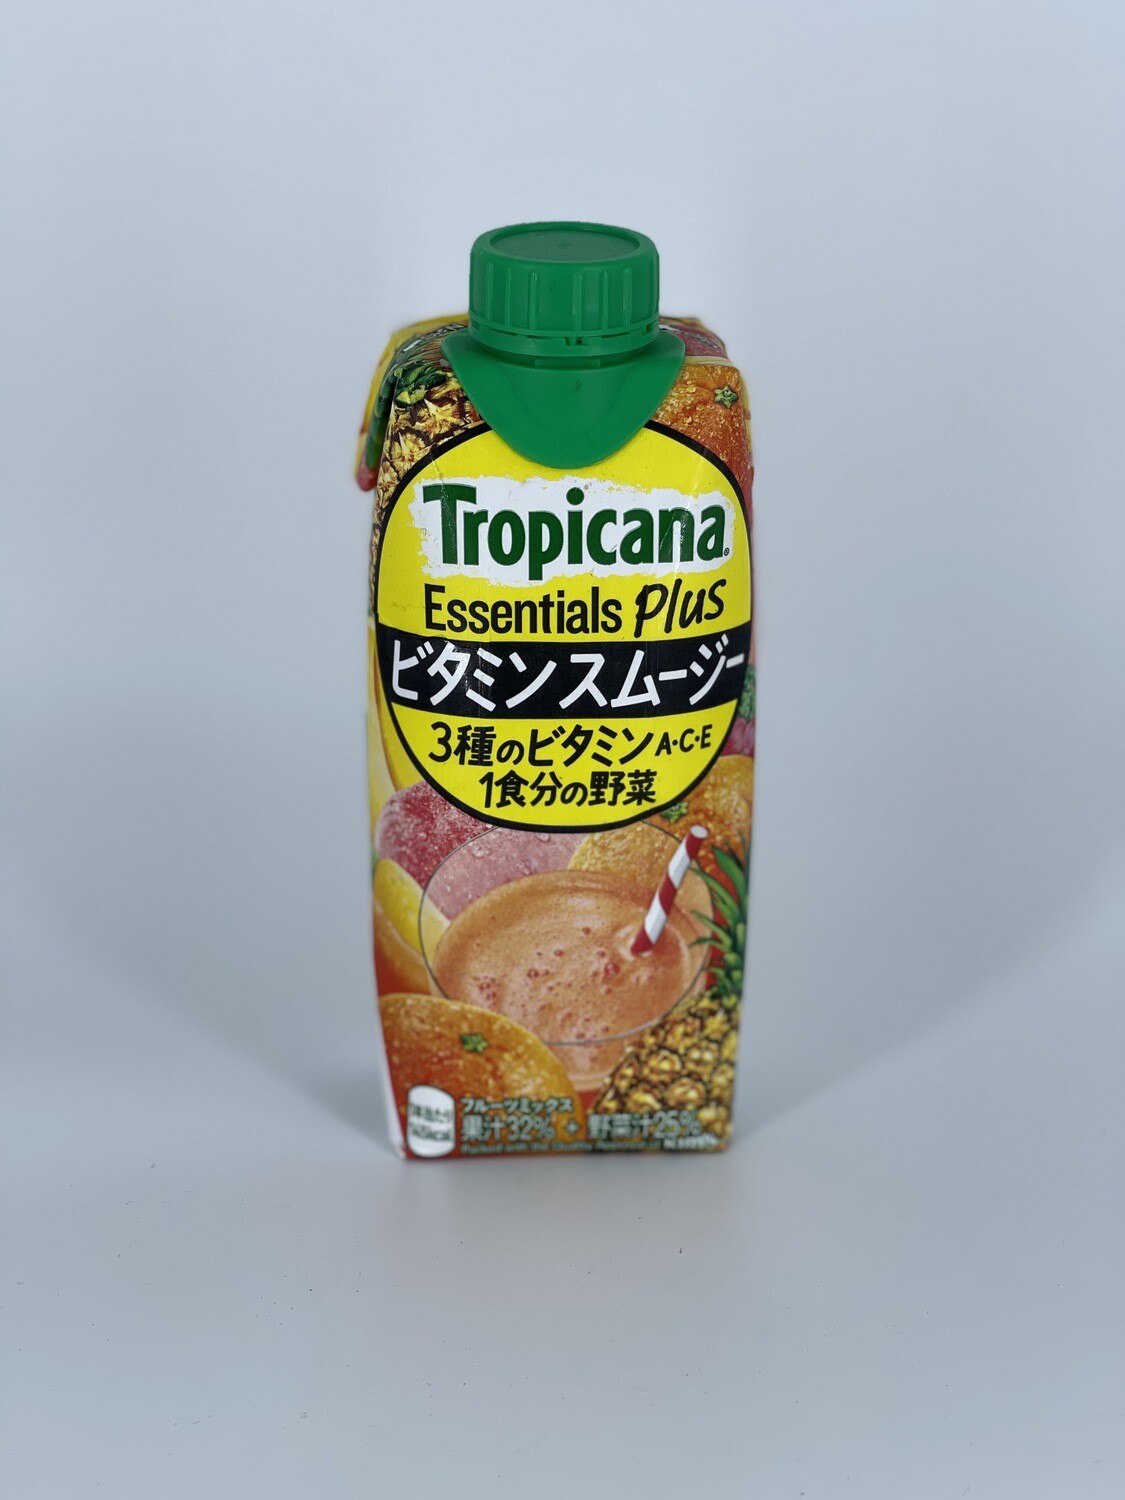 Tropicana Essentials Plus